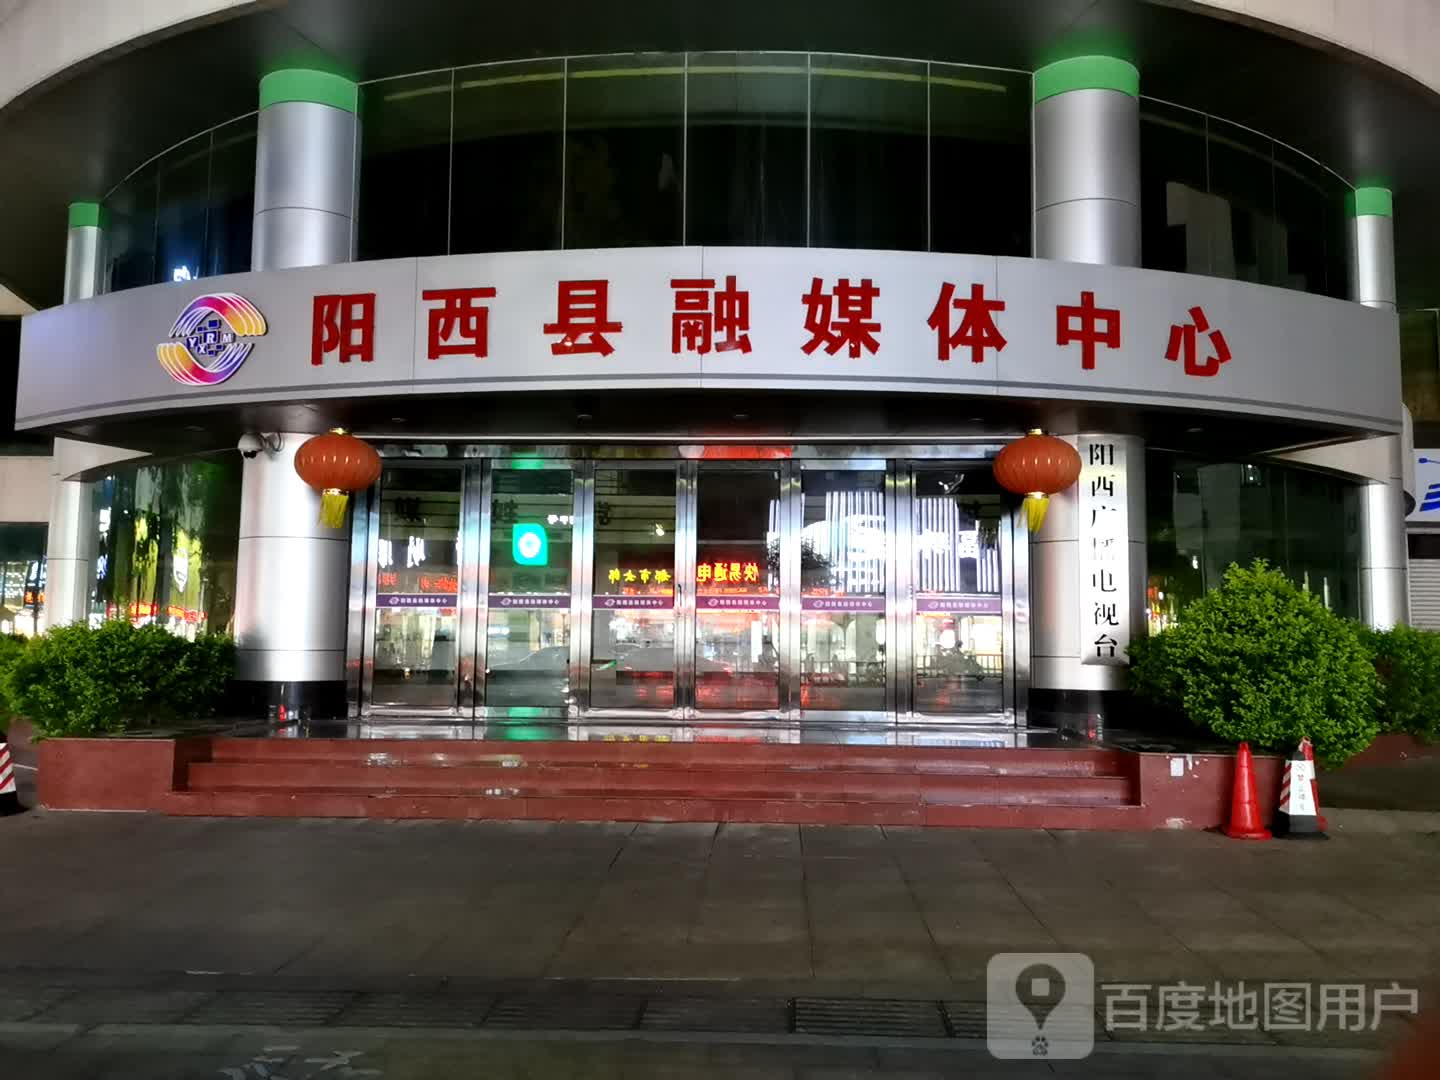 阳西县融媒体中心